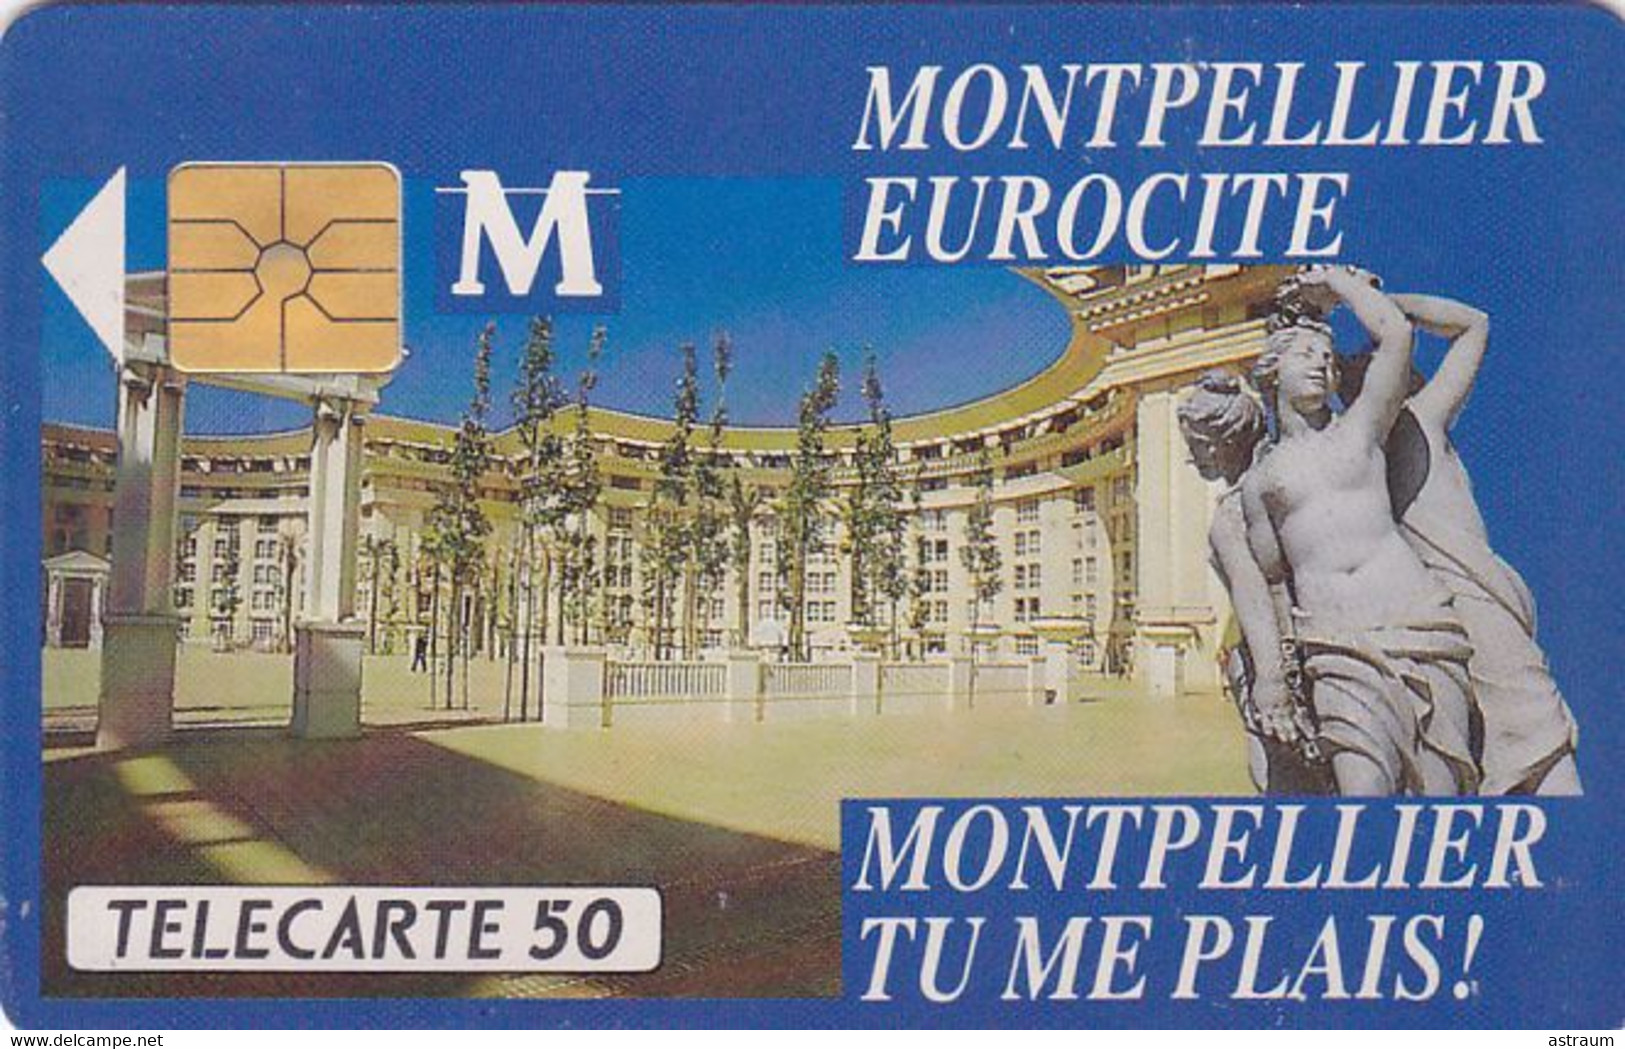 Telecarte Privée - D325 - Montpellier Eurocité - Gem - 1500 Ex  - 50 Un - 1990 - Telefoonkaarten Voor Particulieren